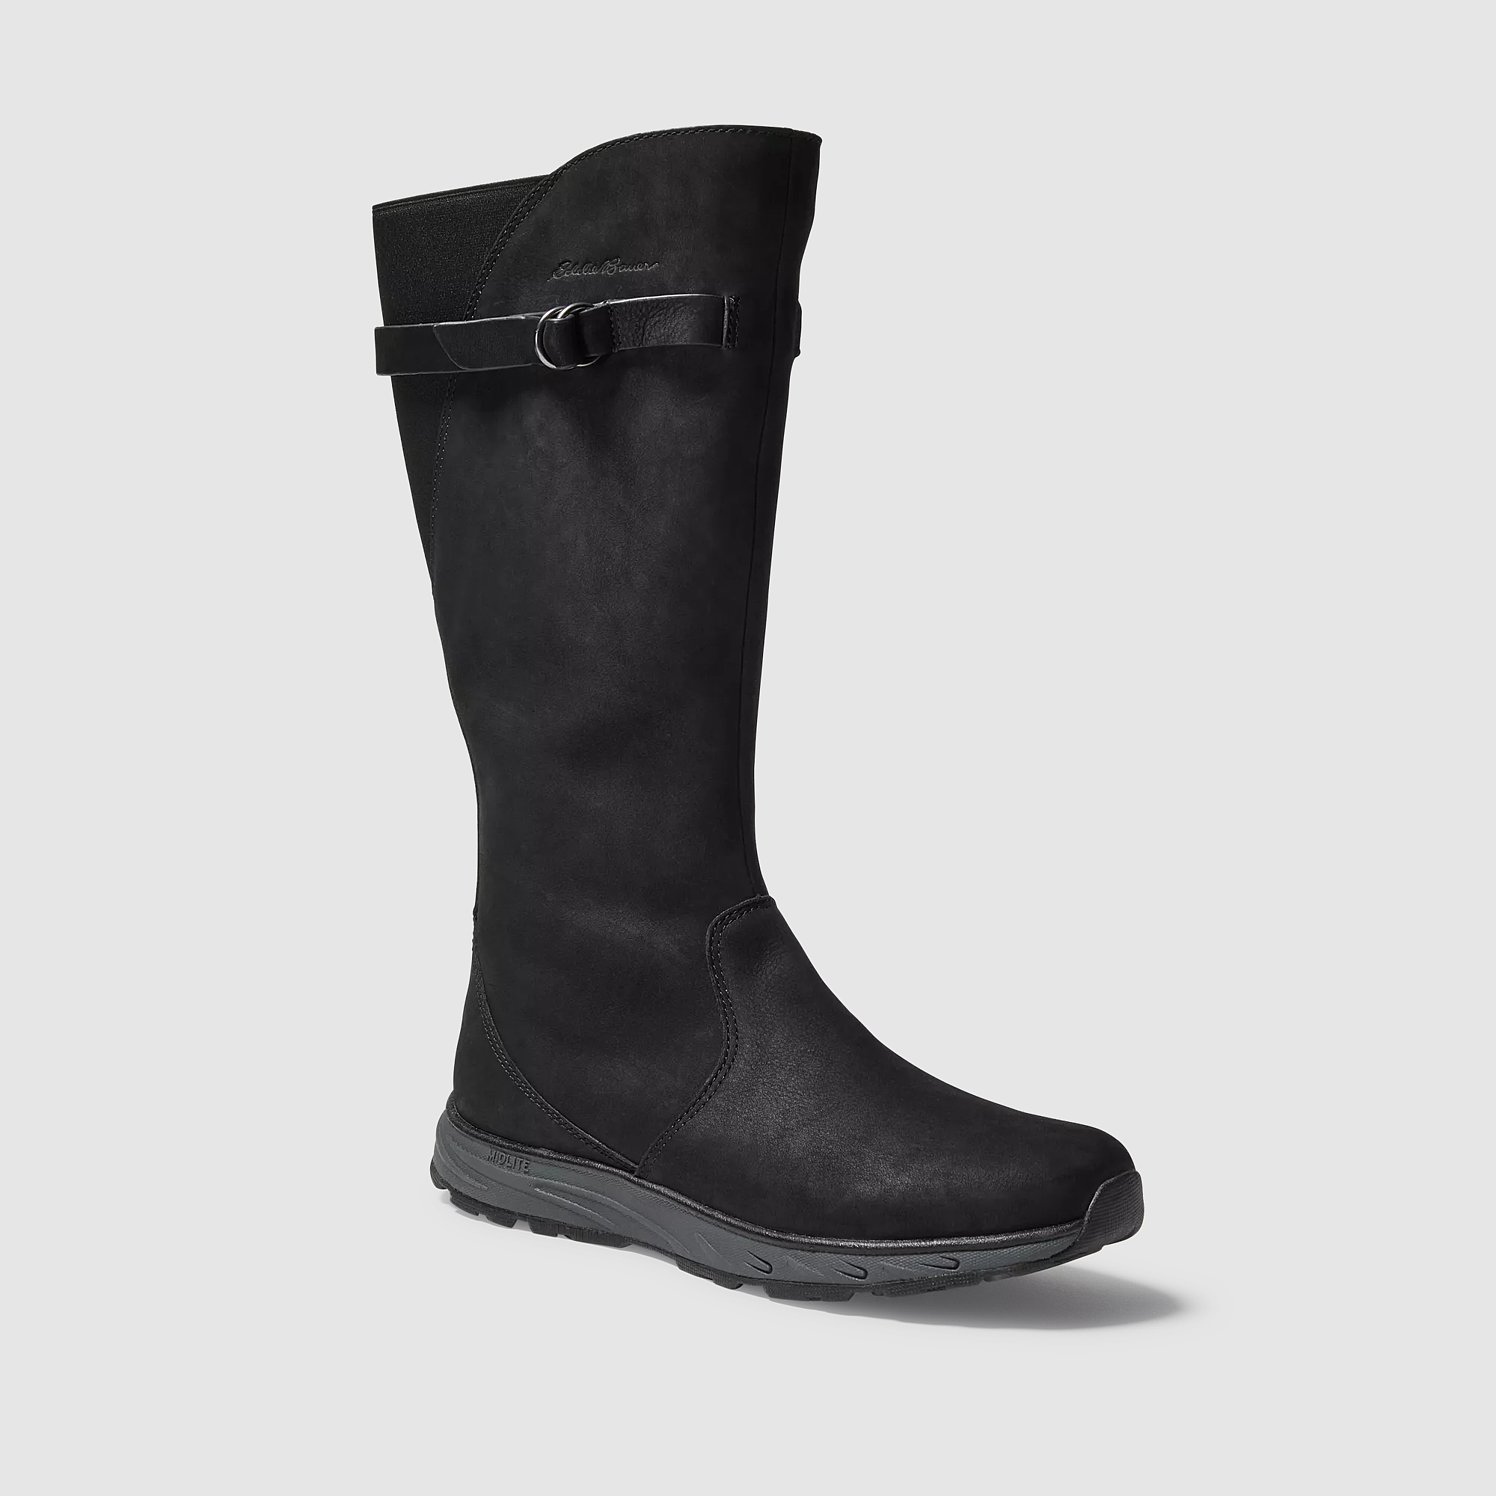 Eddie Bauer Women’s Brown & Black Winter Boots / Various Sizes